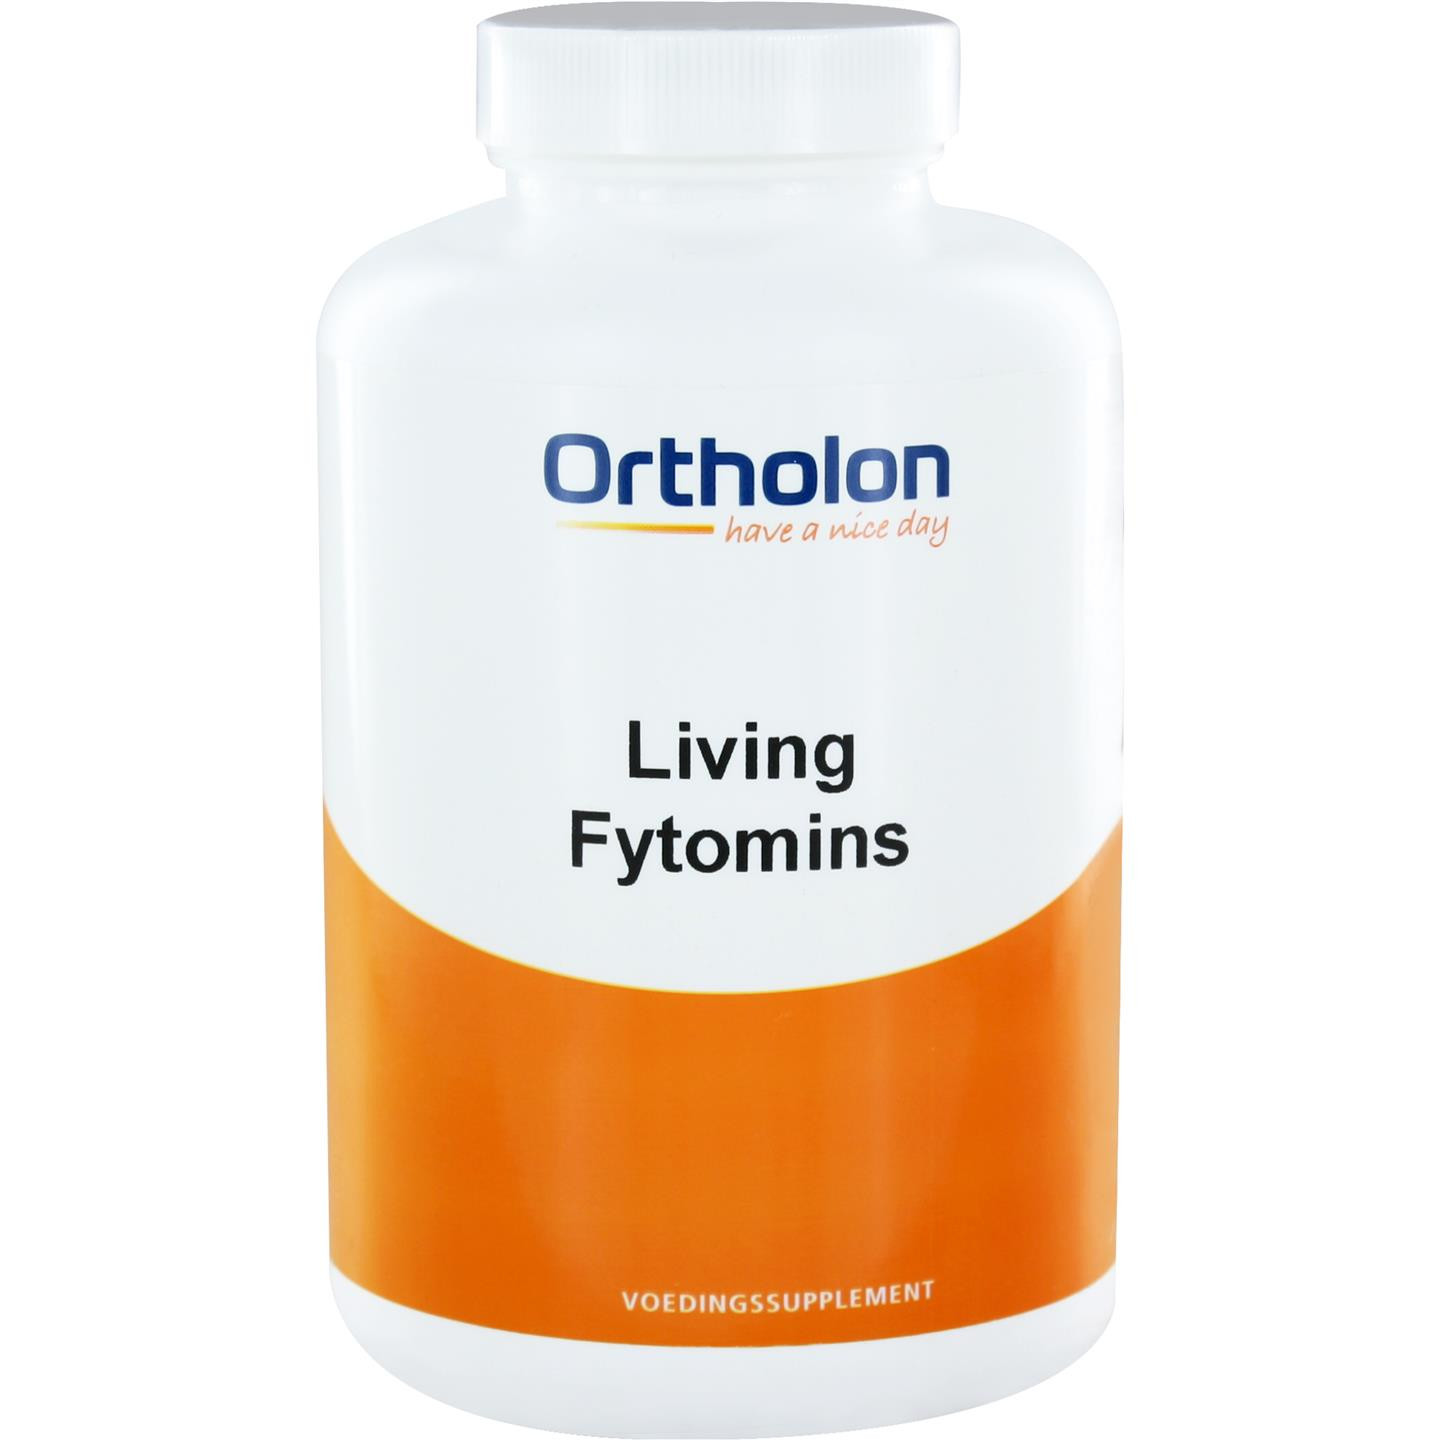 Living Fytomins